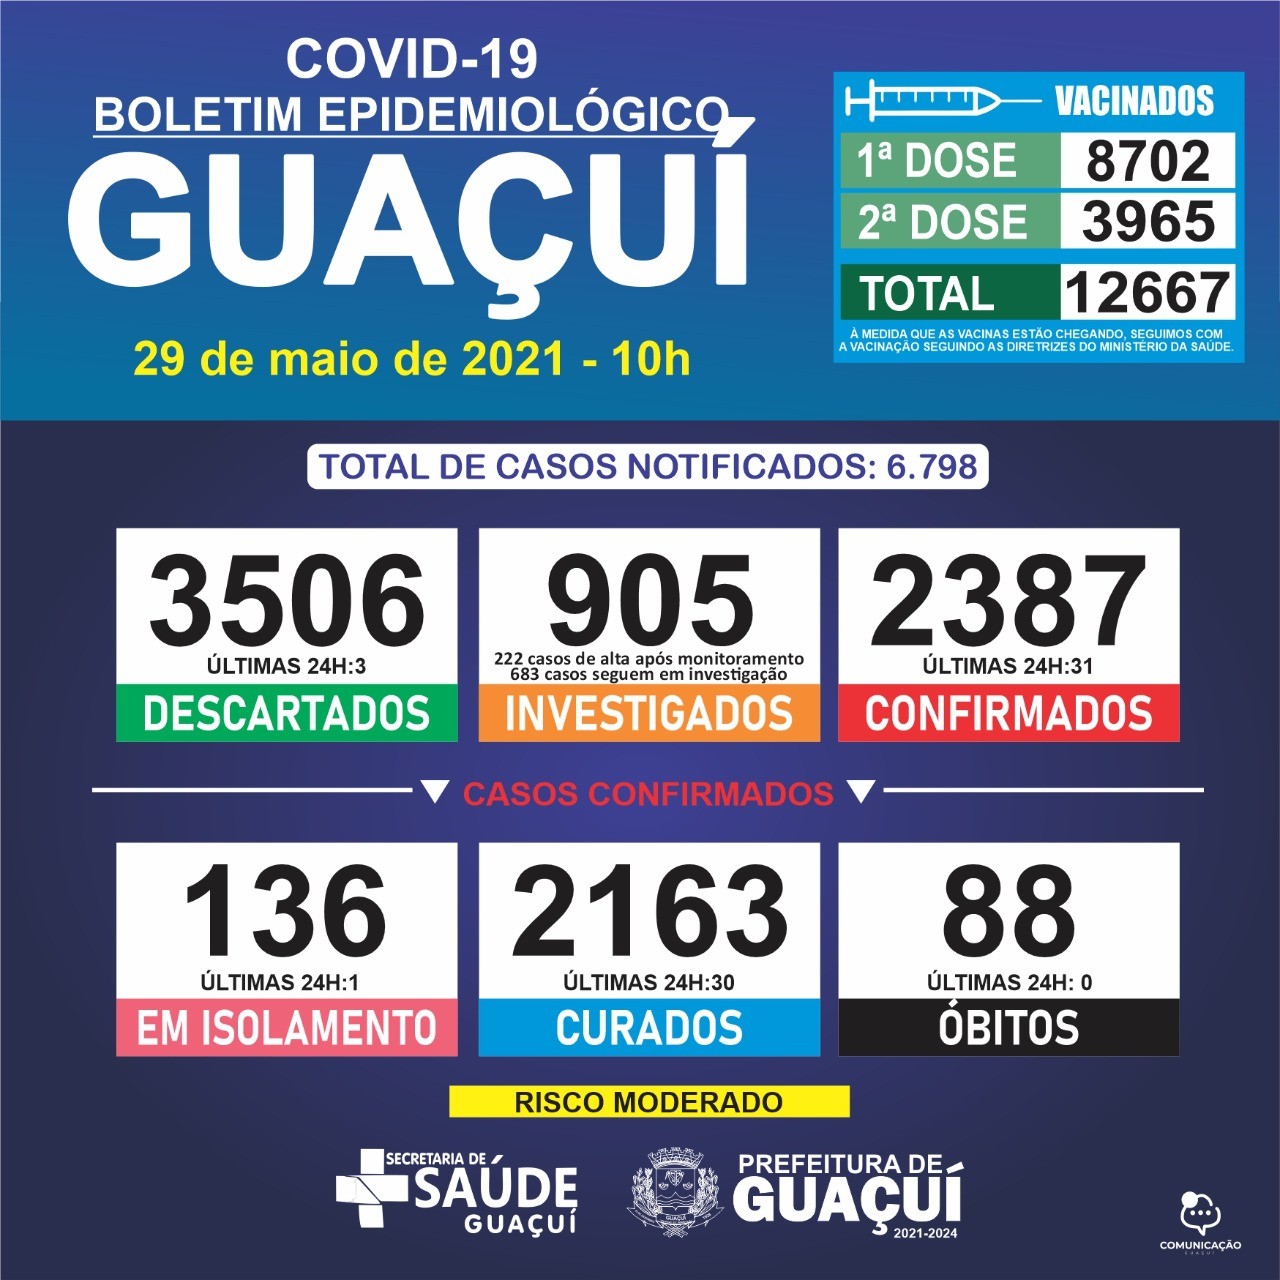 Boletim Epidemiológico 29/05/21: Guaçuí registra 31 casos confirmados e 30 curados de Covid-19